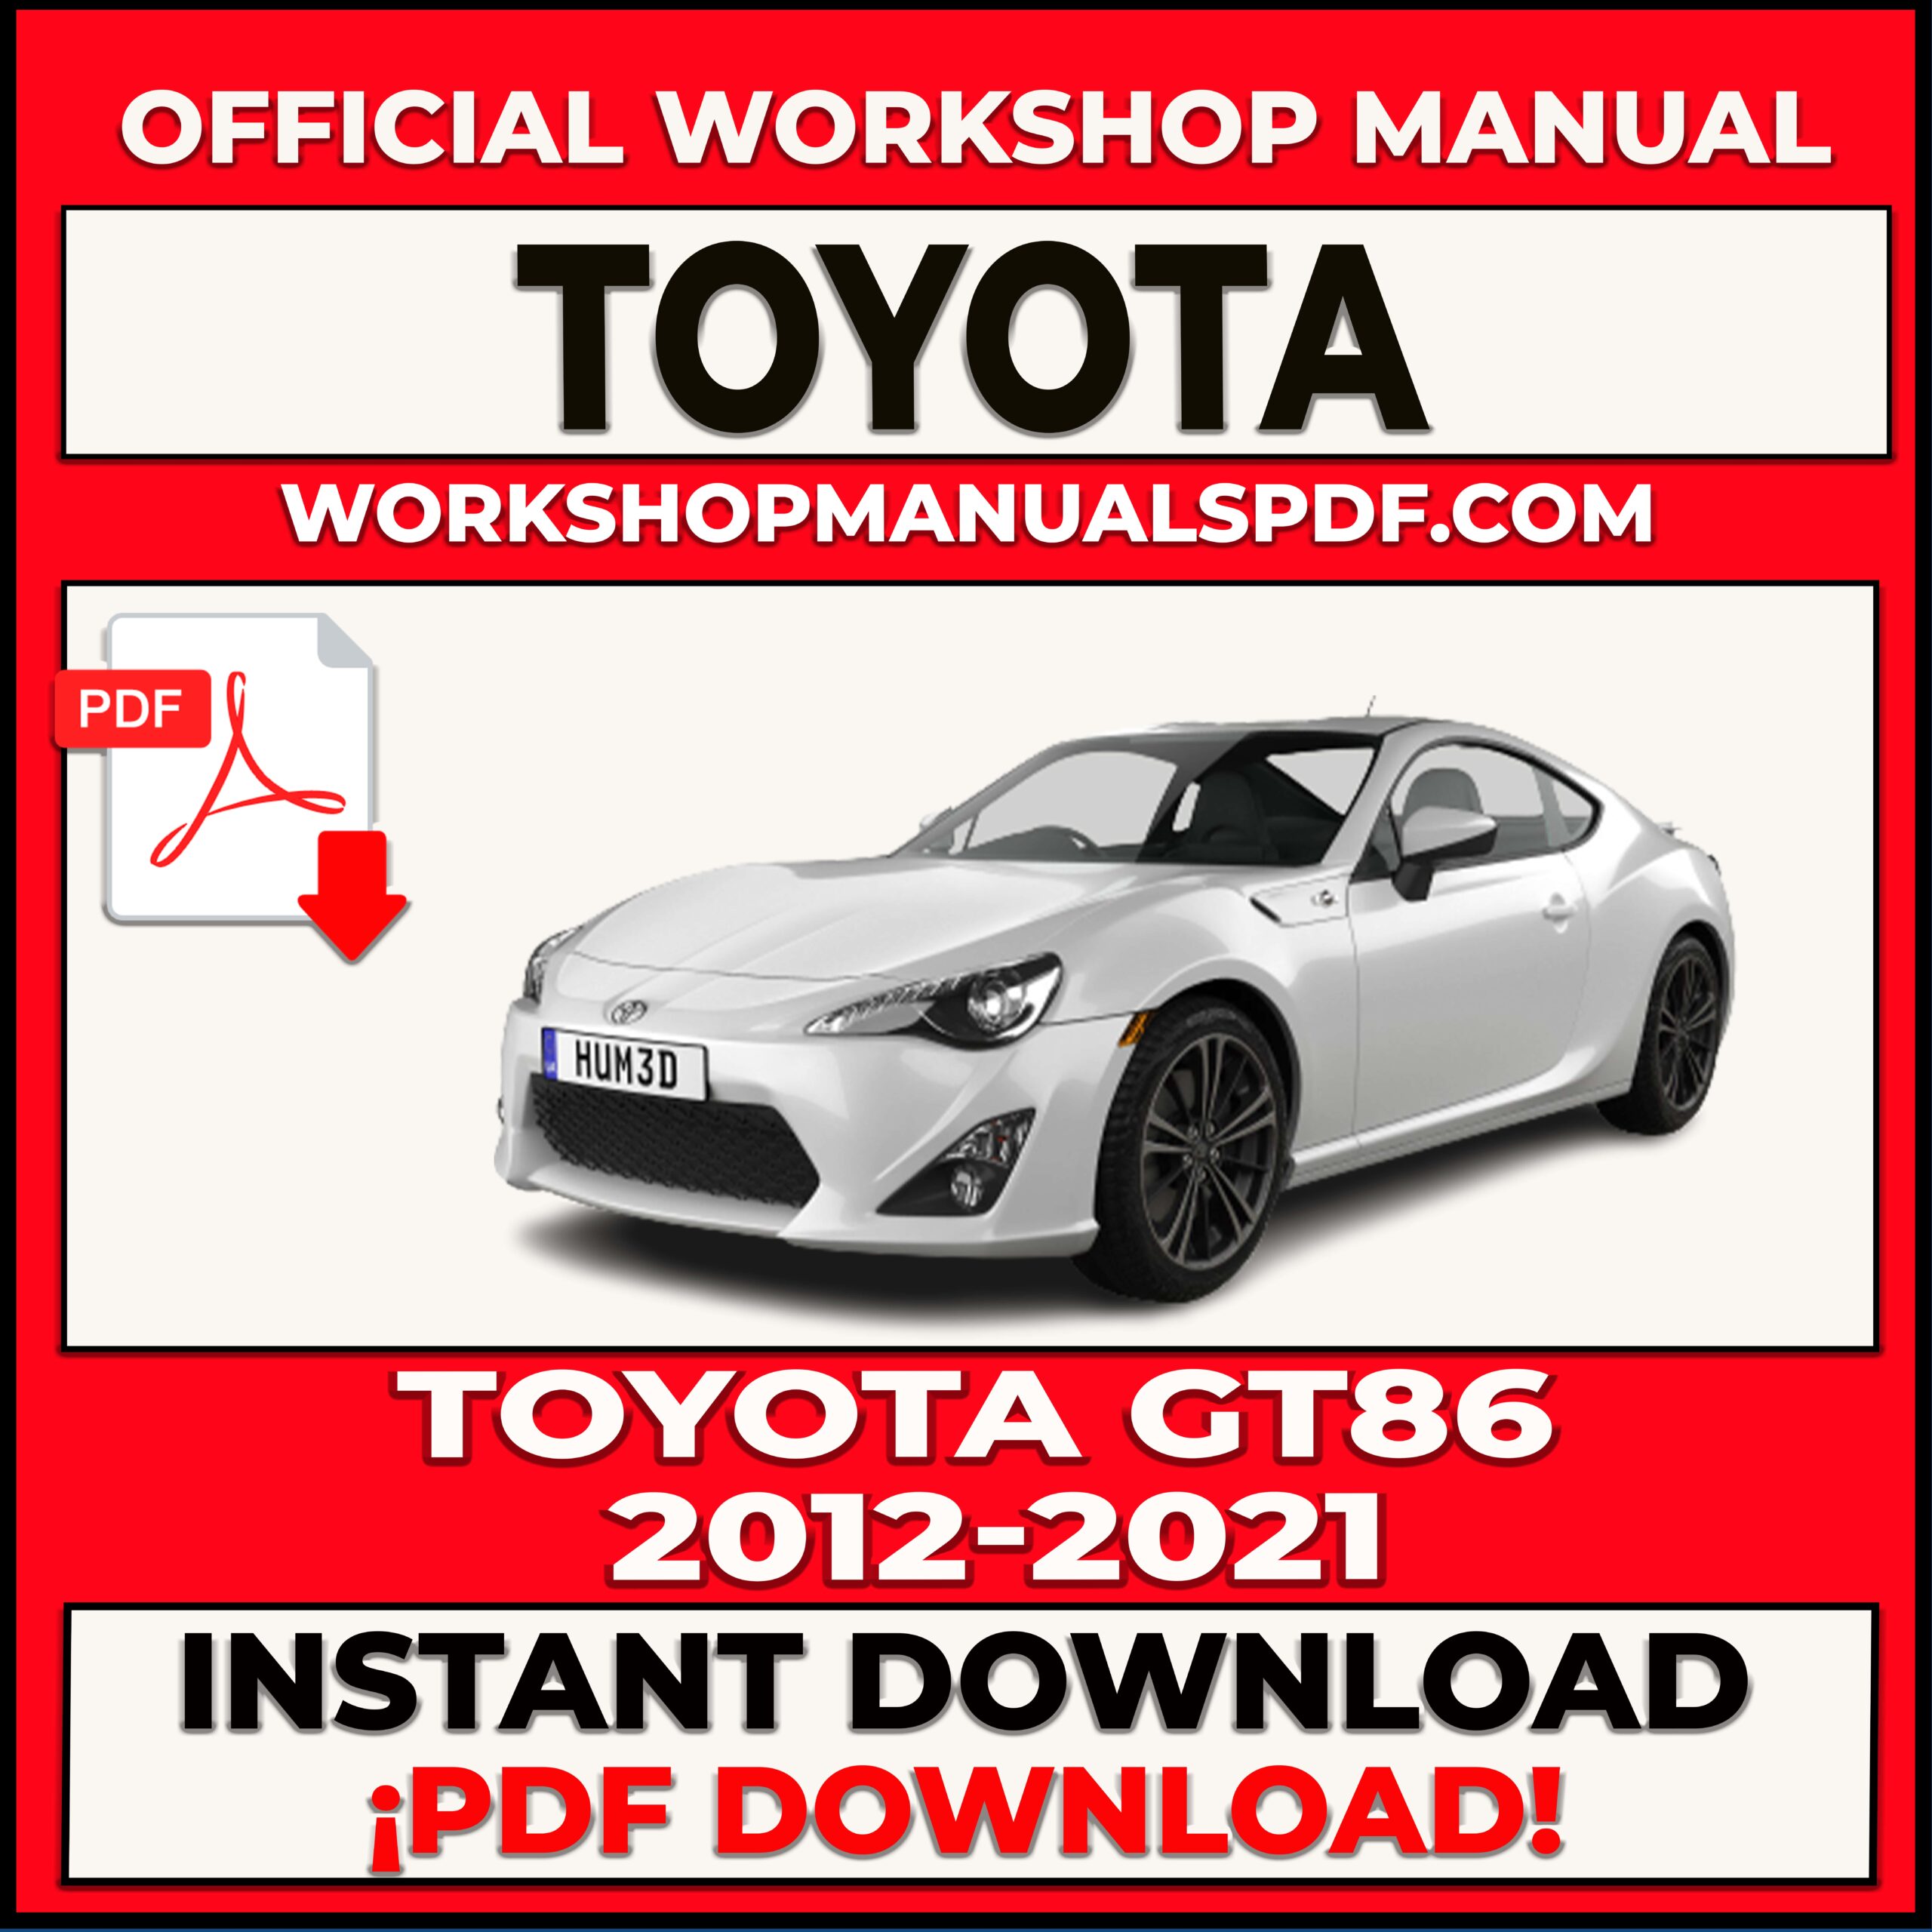 Toyota GT86 (2012-2021) Workshop Repair Manual